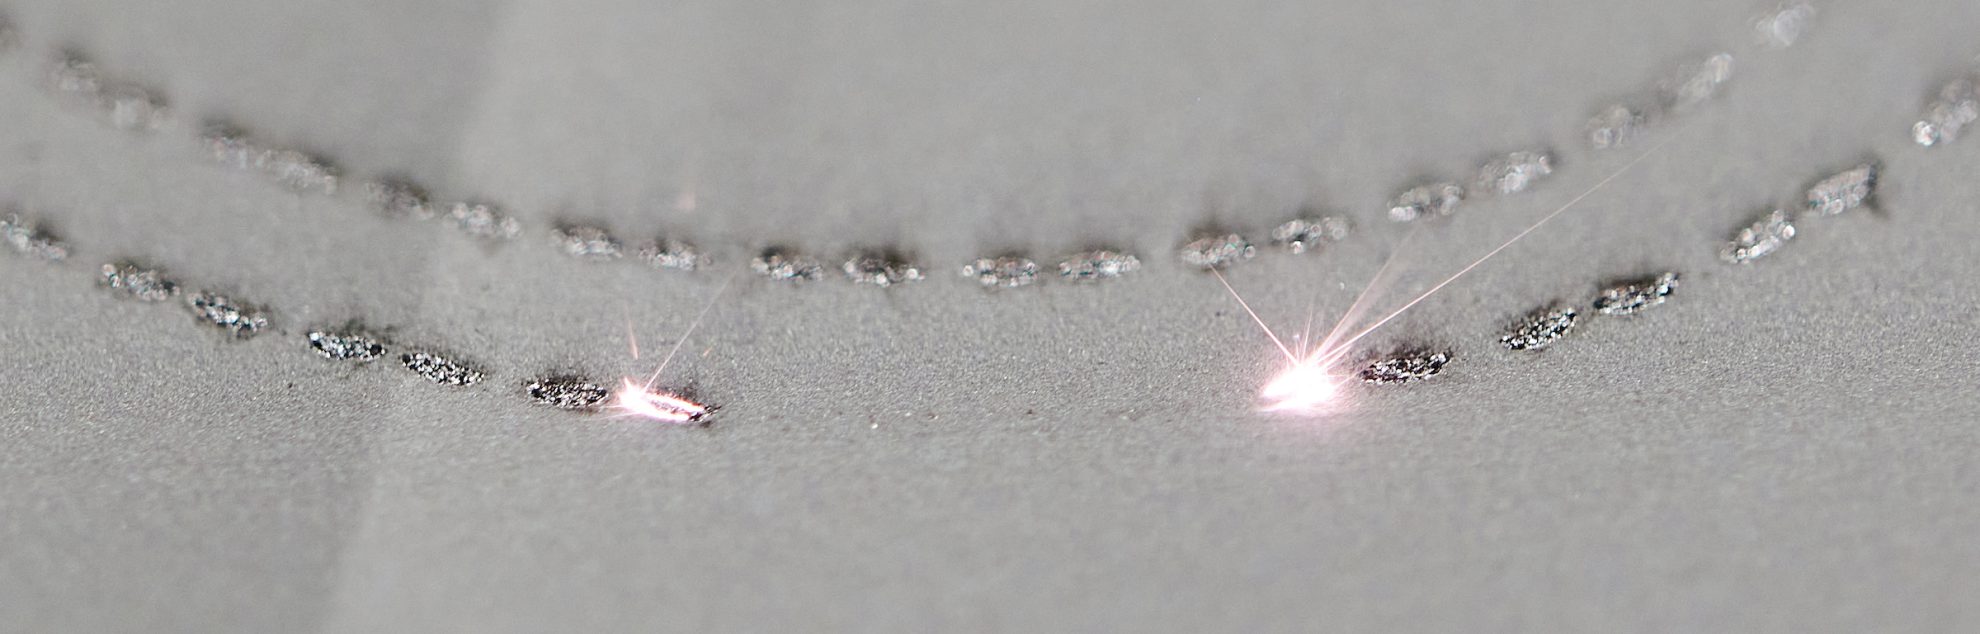 3P-TeCH – Plateforme de fabrication additive par fusion laser de poudres métalliques